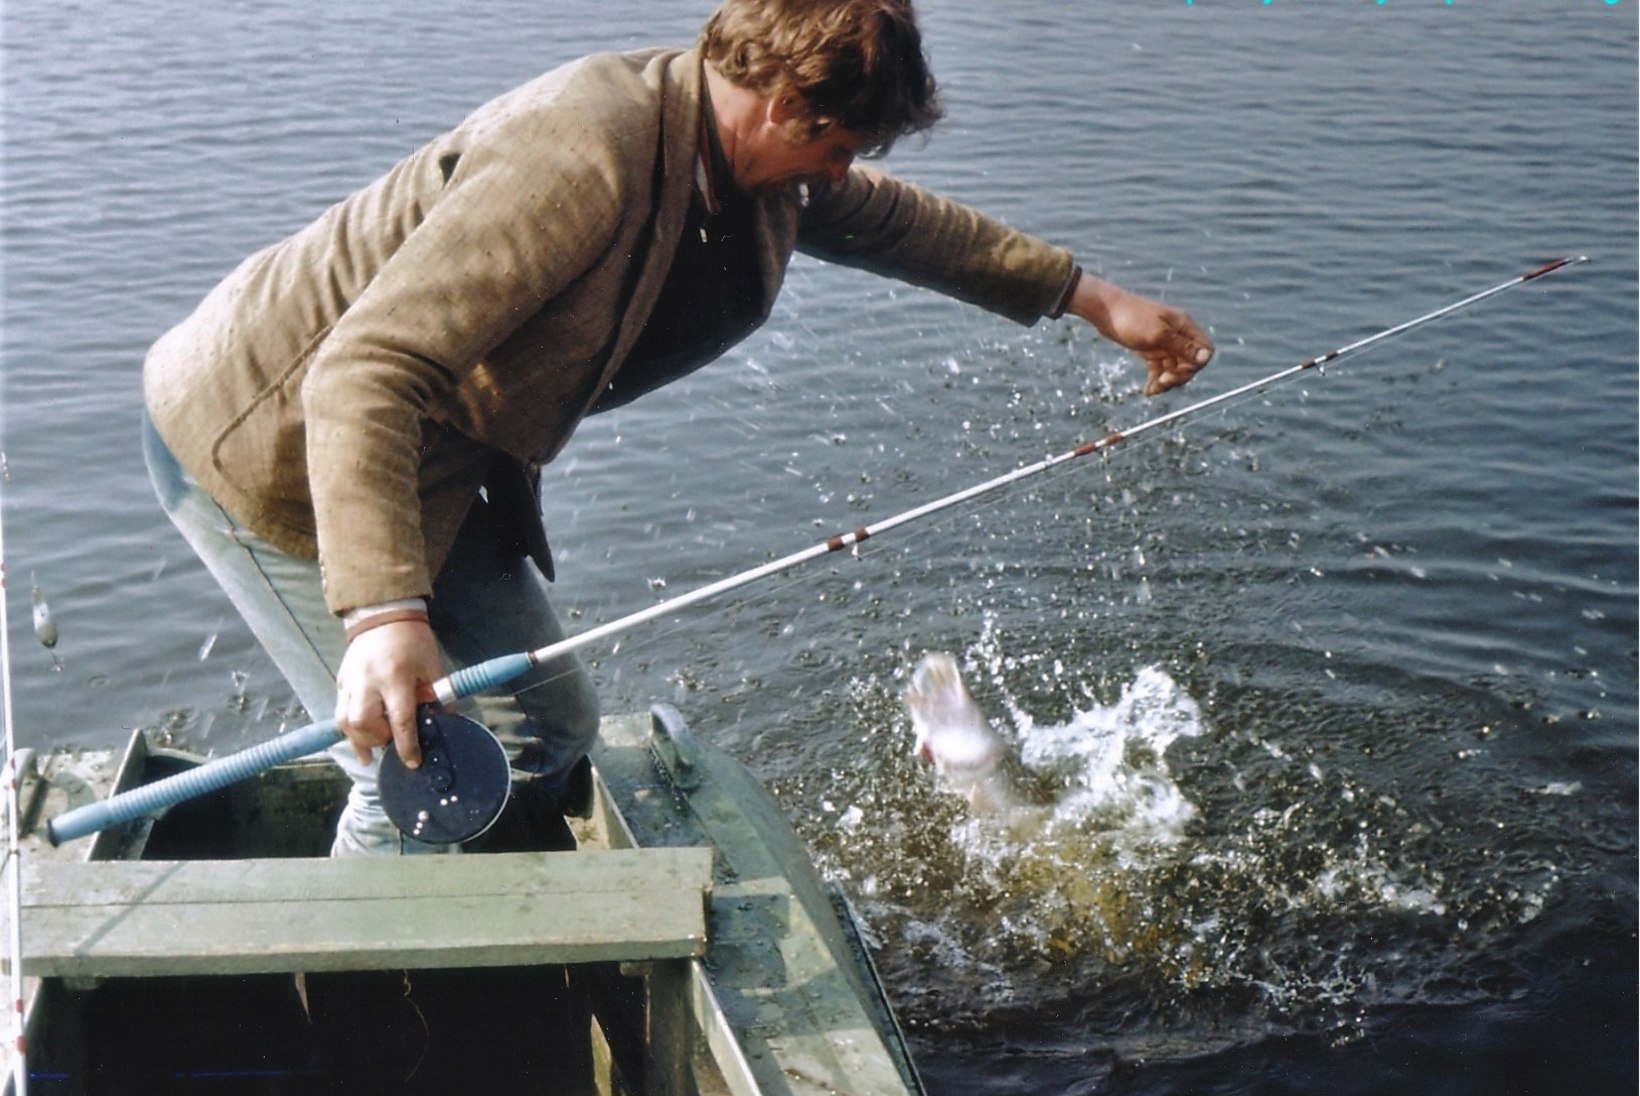 AJALUGU | Veterankalamees Katenevi päevikud 1983: aasta ilusaimad saagid tulid Peipsilt